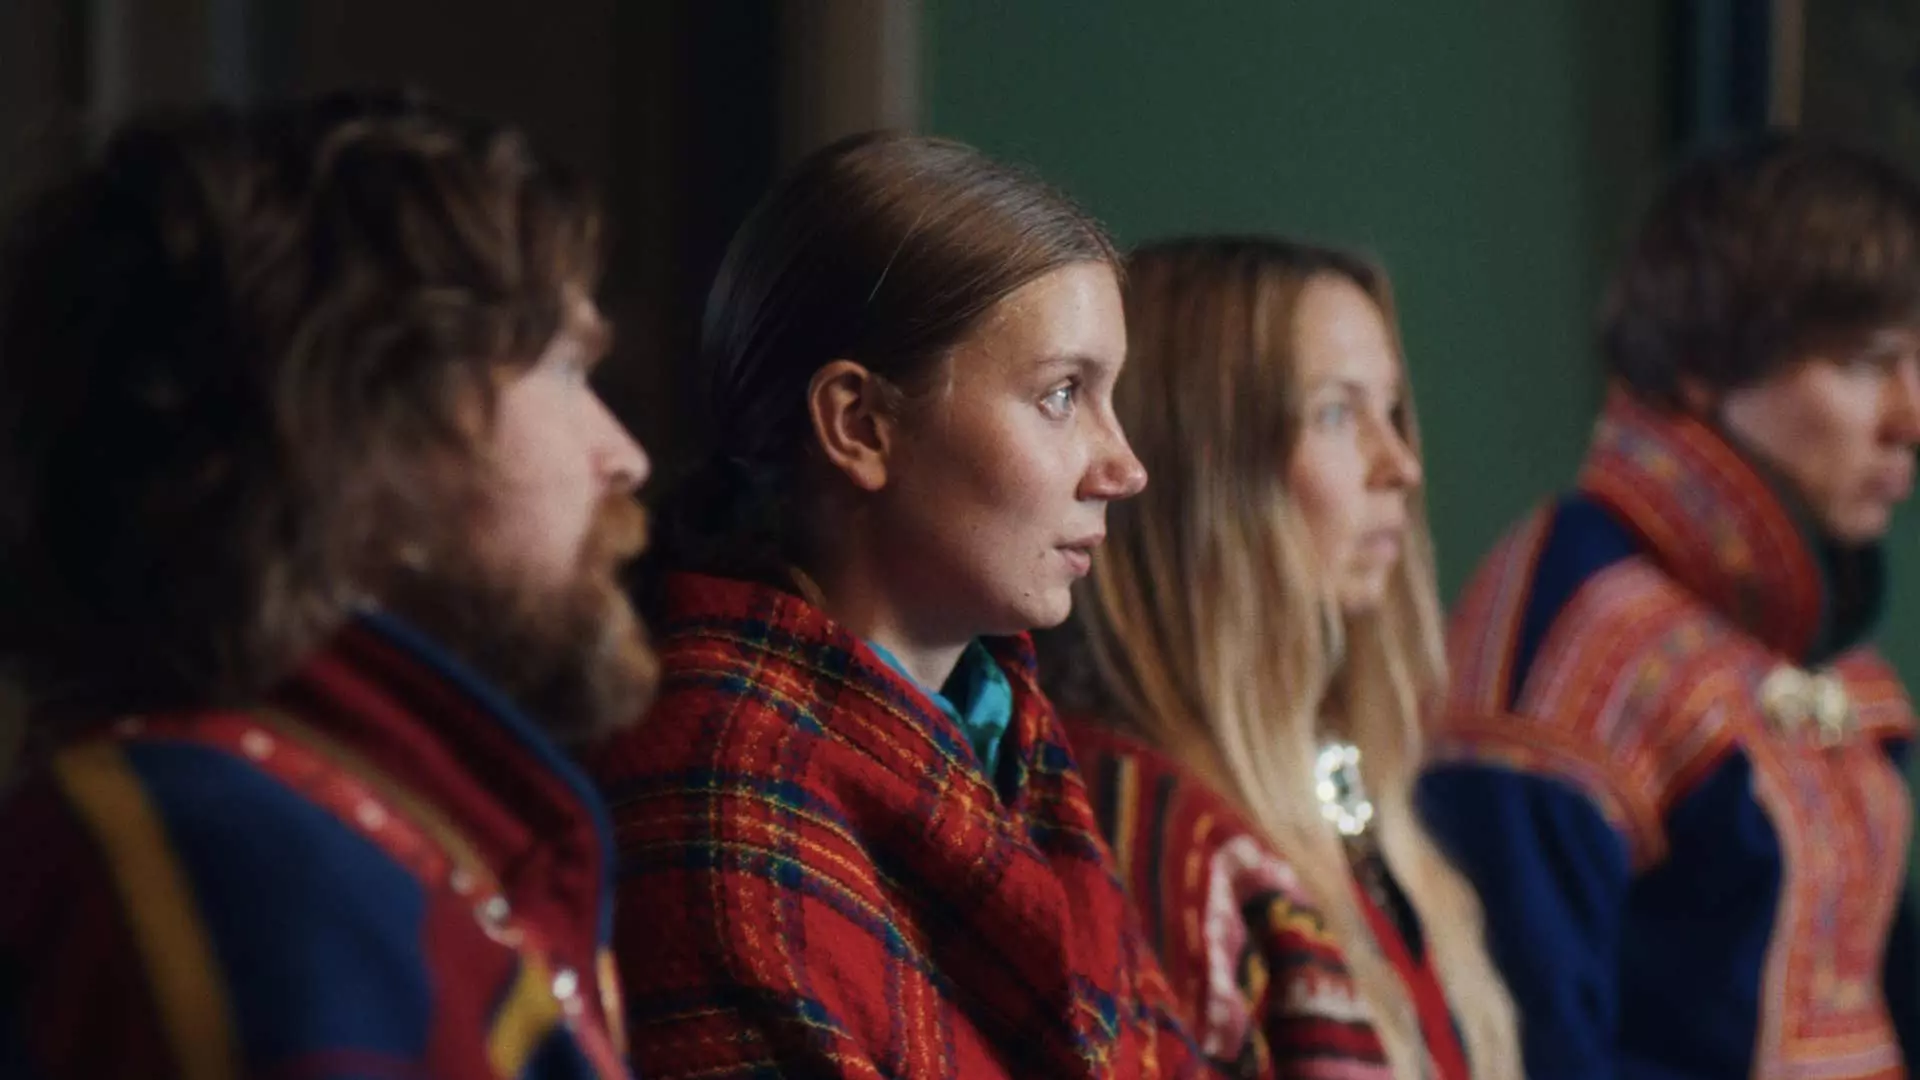 Ung kvinne i profil. Hun har et rødt rutete sjal rundt seg. Det ser ut som et sjal som tilhører en samisk kofte. Hun ser alvorlig ut. Rundt henne sitter flere mennesker som også har på seg samiske kofter. De befinner seg i et grønt rom.